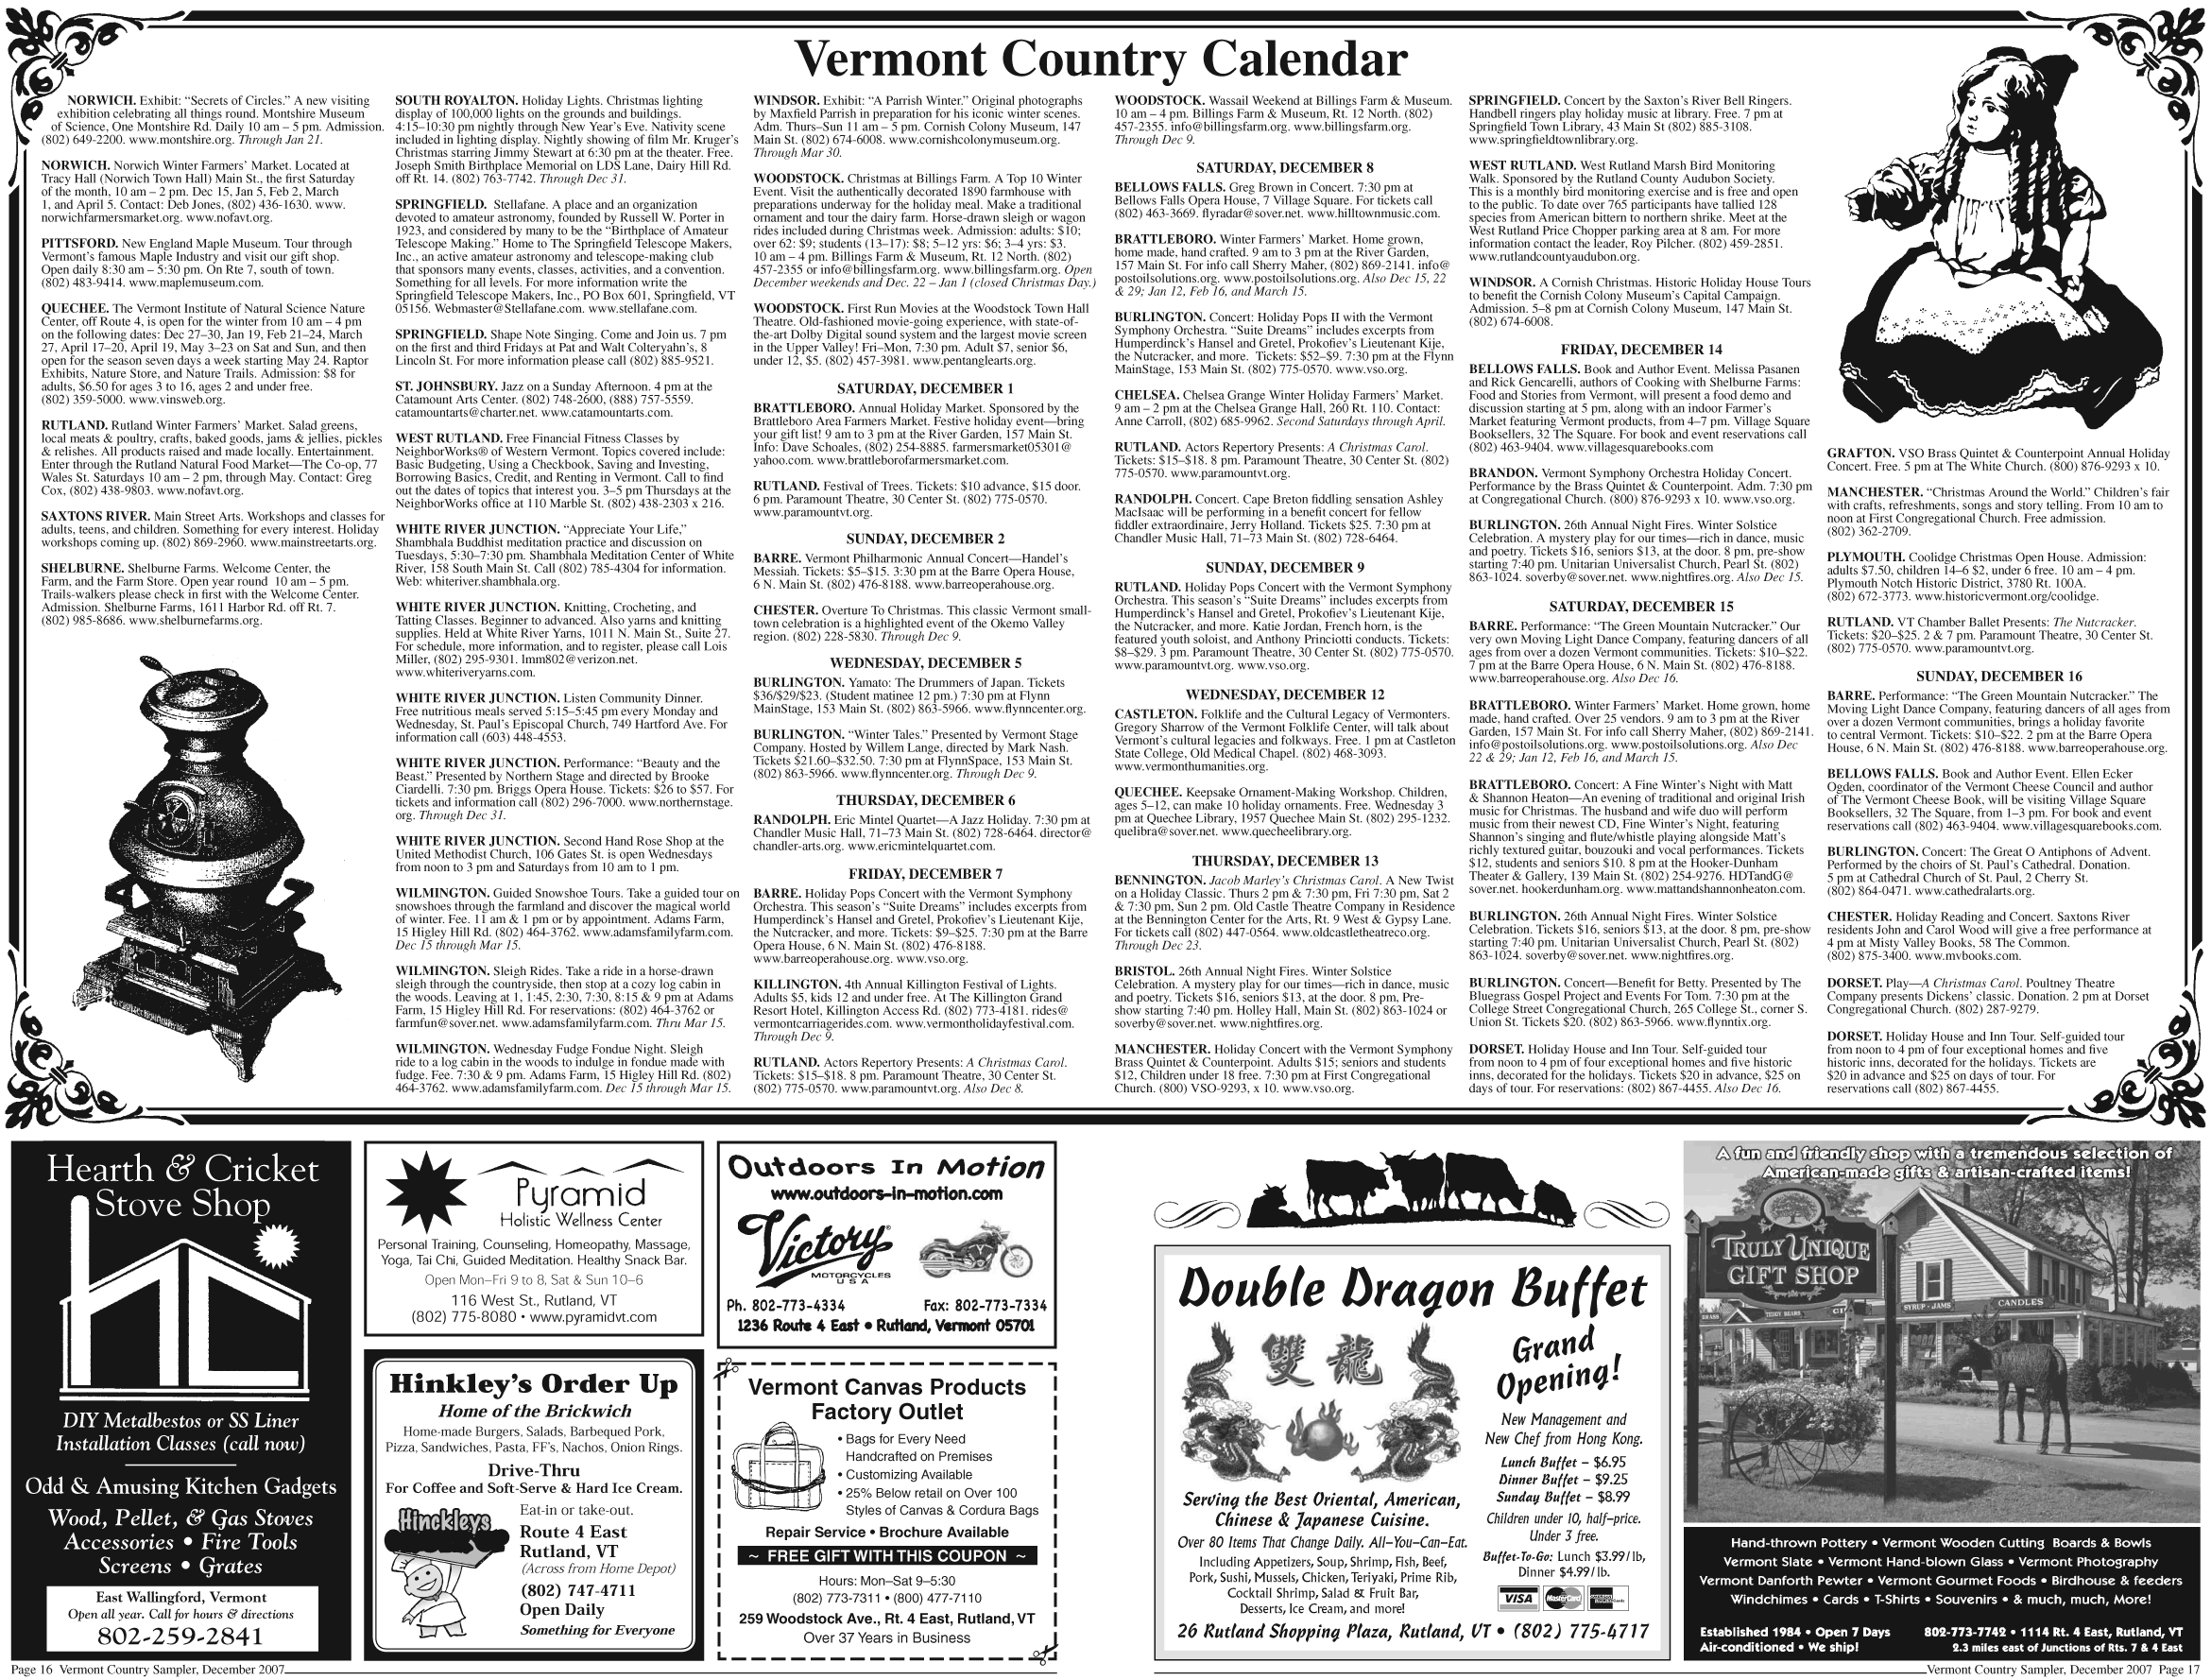 Sampler Dec 2007 Page 16-17